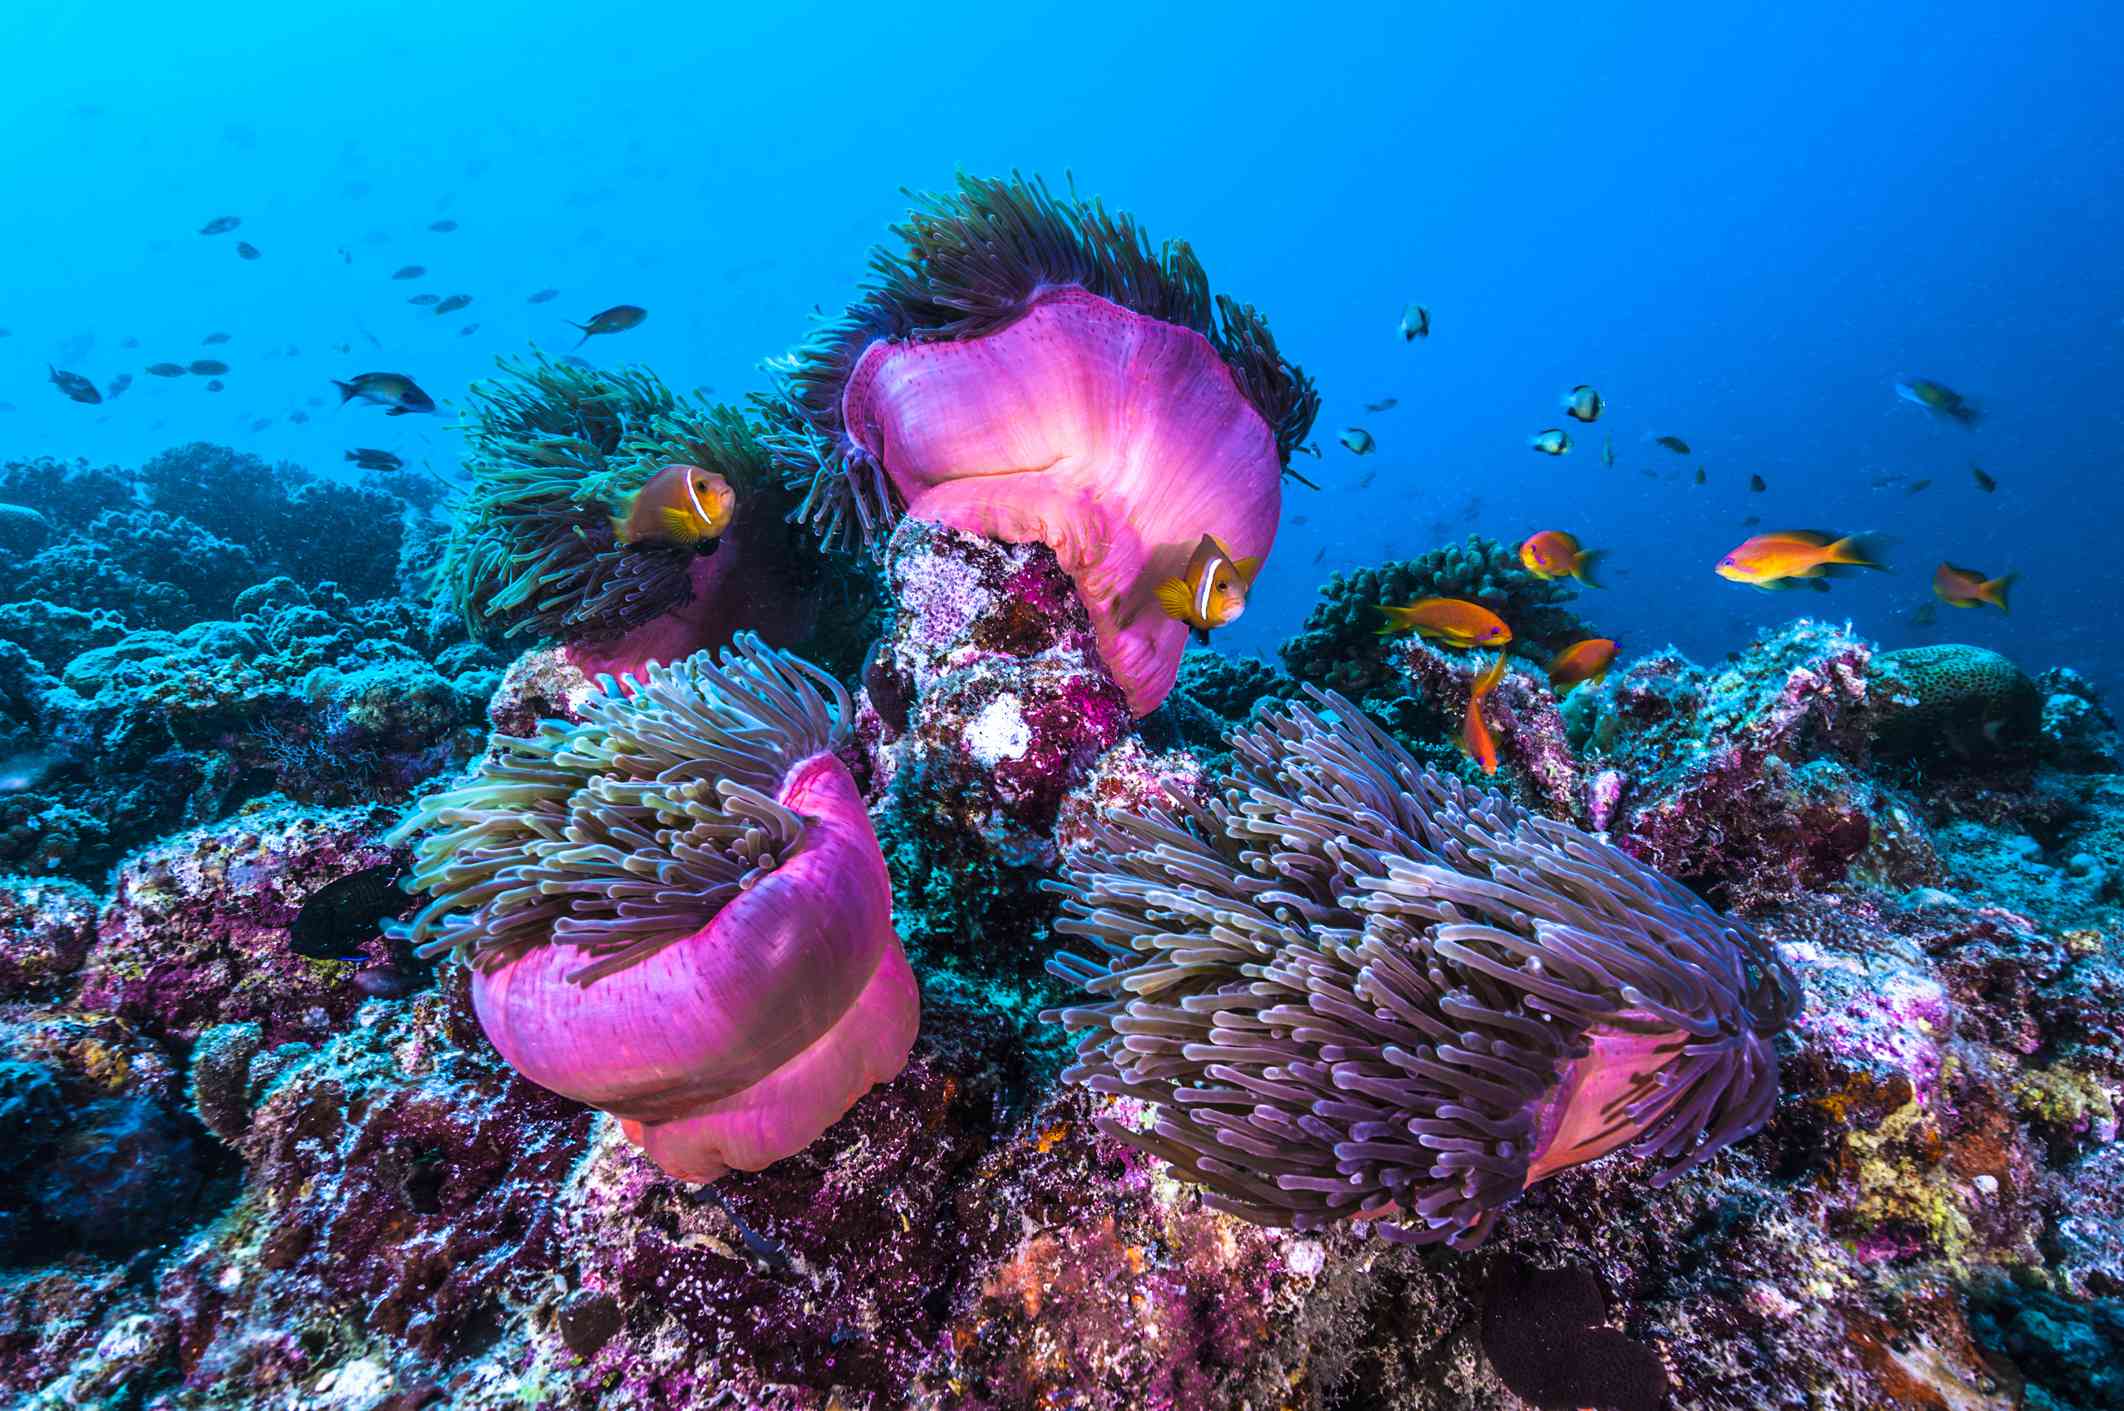 pez anémona payaso naranja y negro en agua azul brillante nadando a lo largo de la anémona rosa vibrante y el colorido arrecife de coral